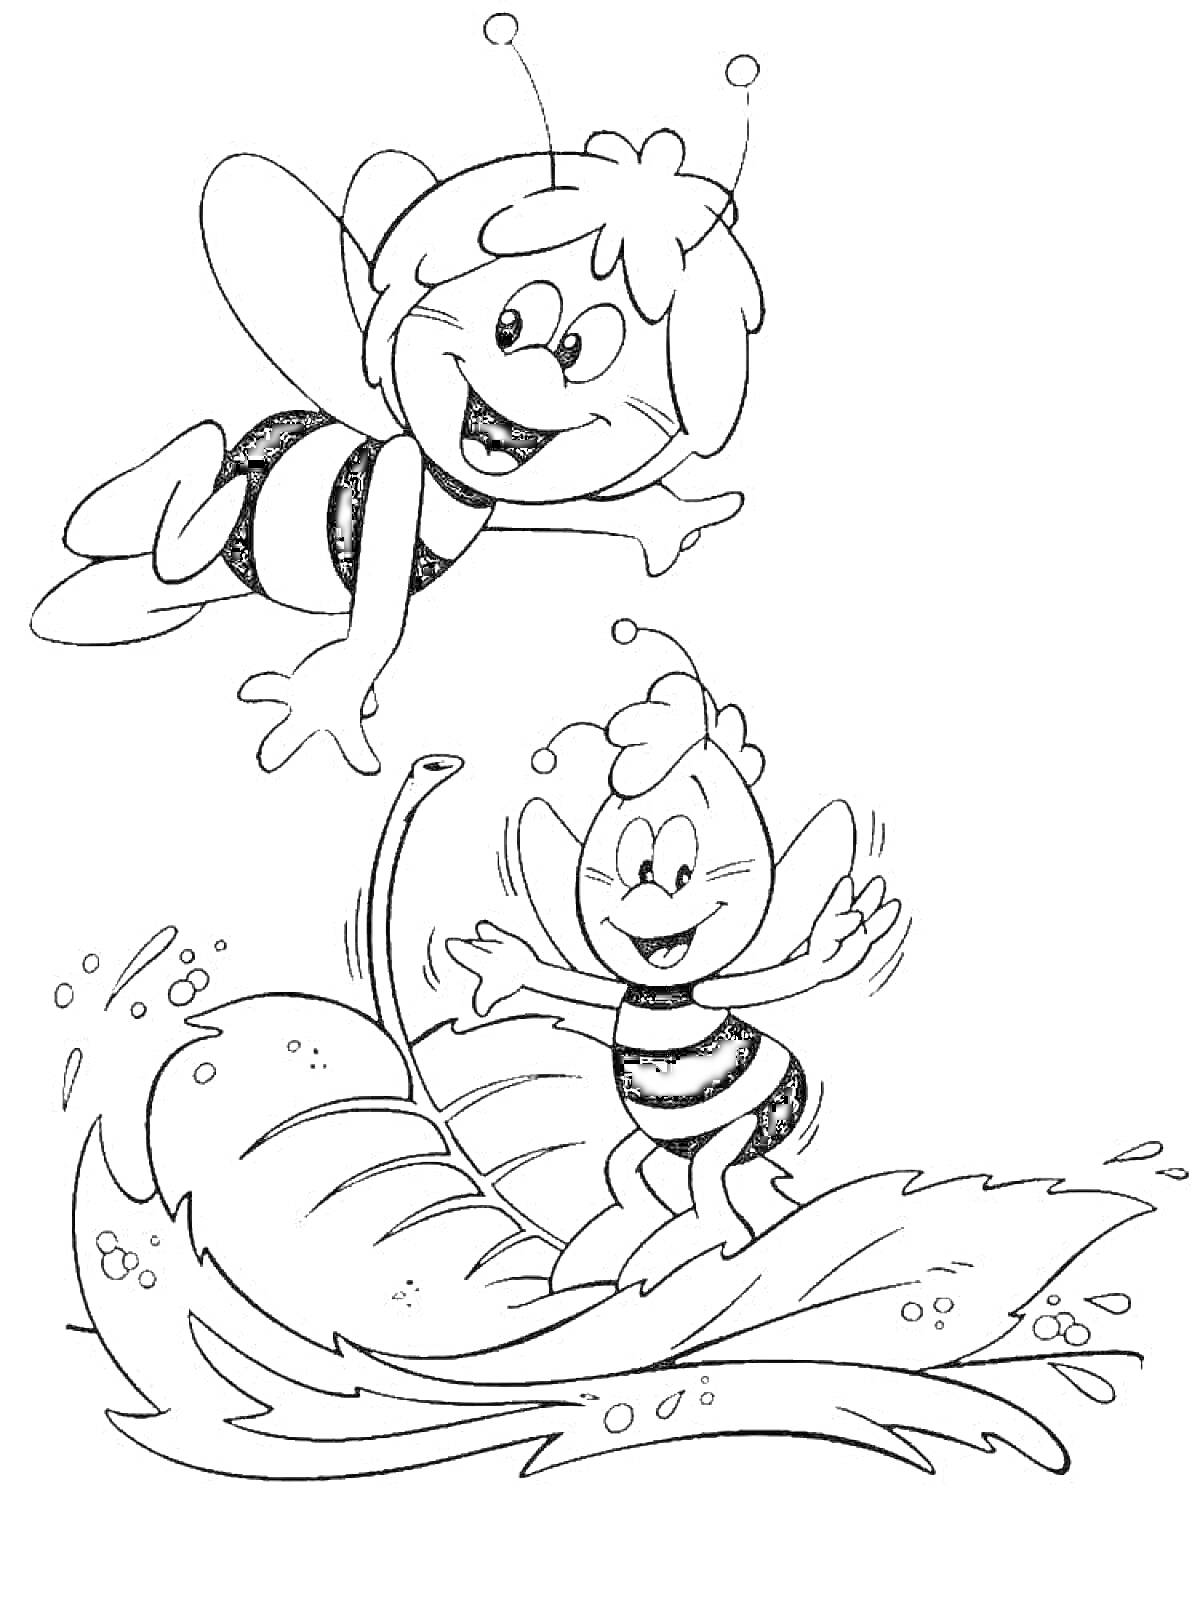 Раскраска Пчелки: одна пчелка летит, другая стоит на листе в воде